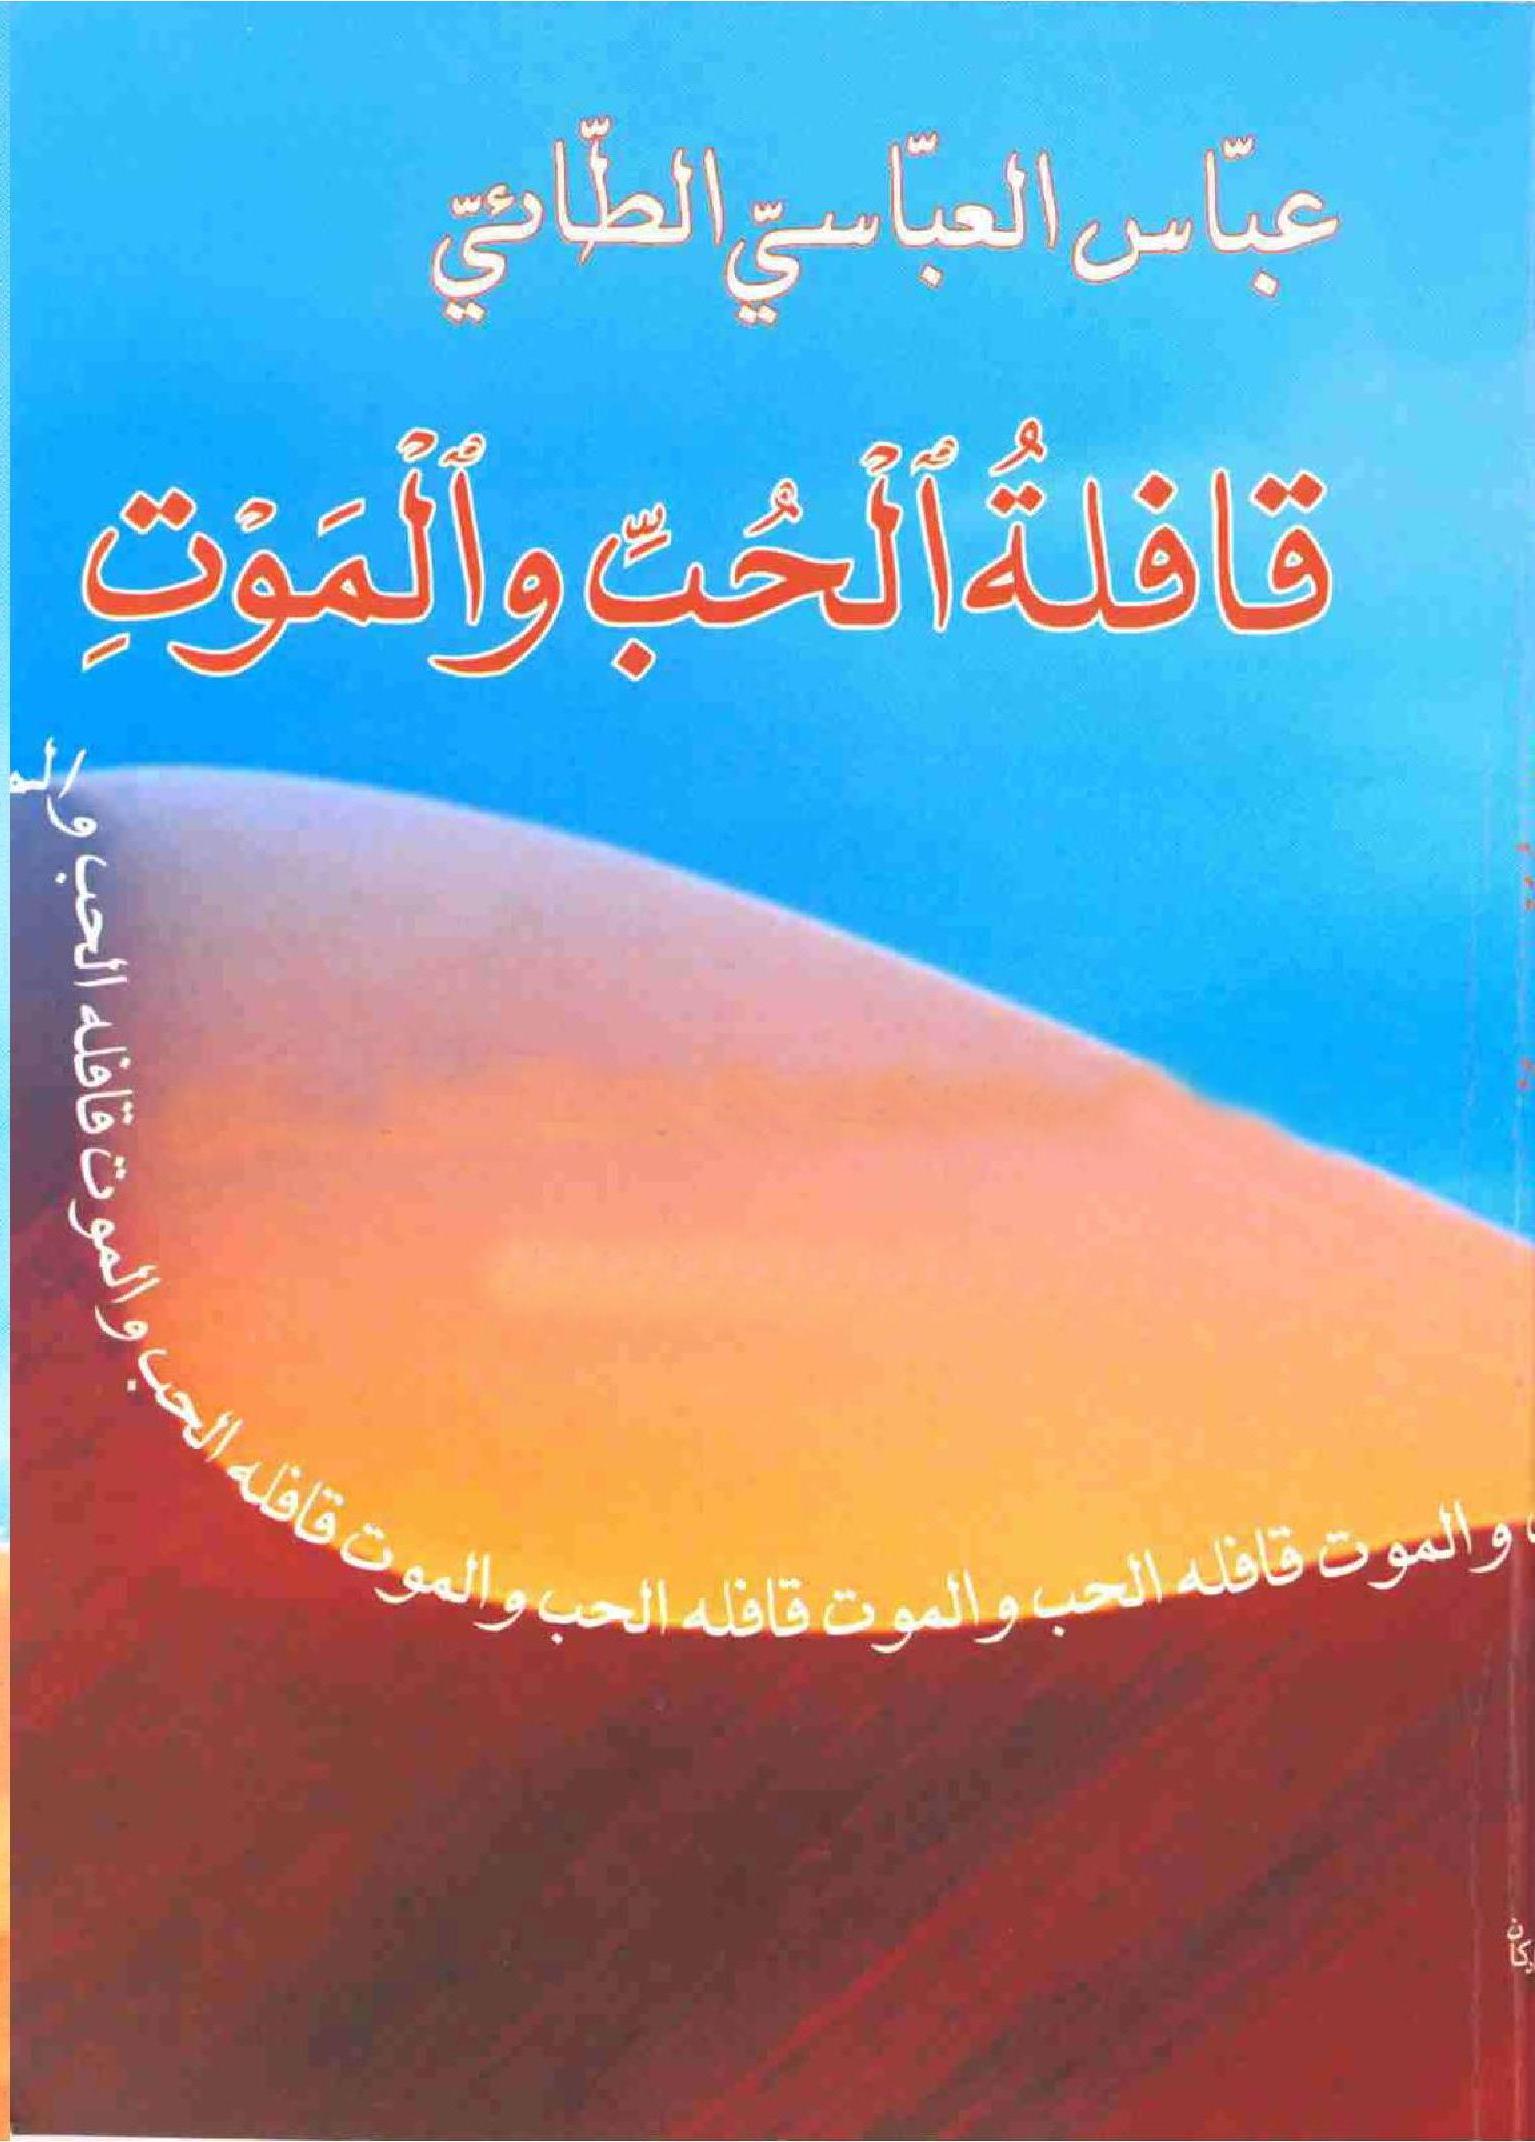 کتاب: قافلة الحب والموت  تألیف: الدکتور عباس العباسی الطائی